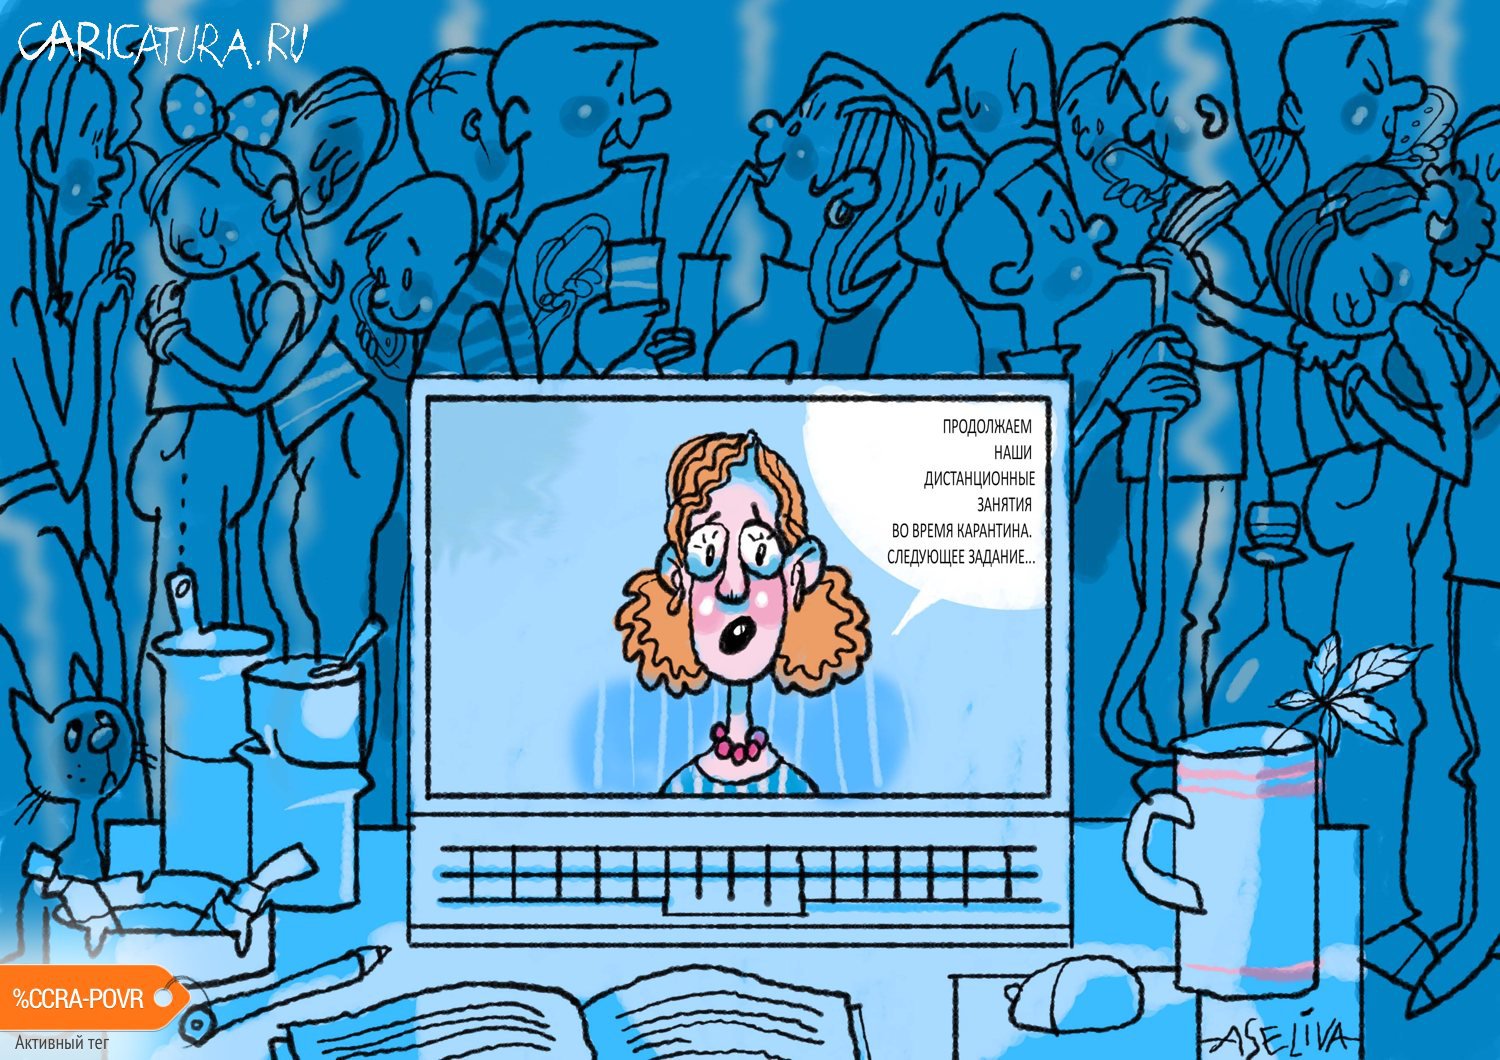 Карикатура "Дистанционное обучение во время пандемии", Андрей Селиванов